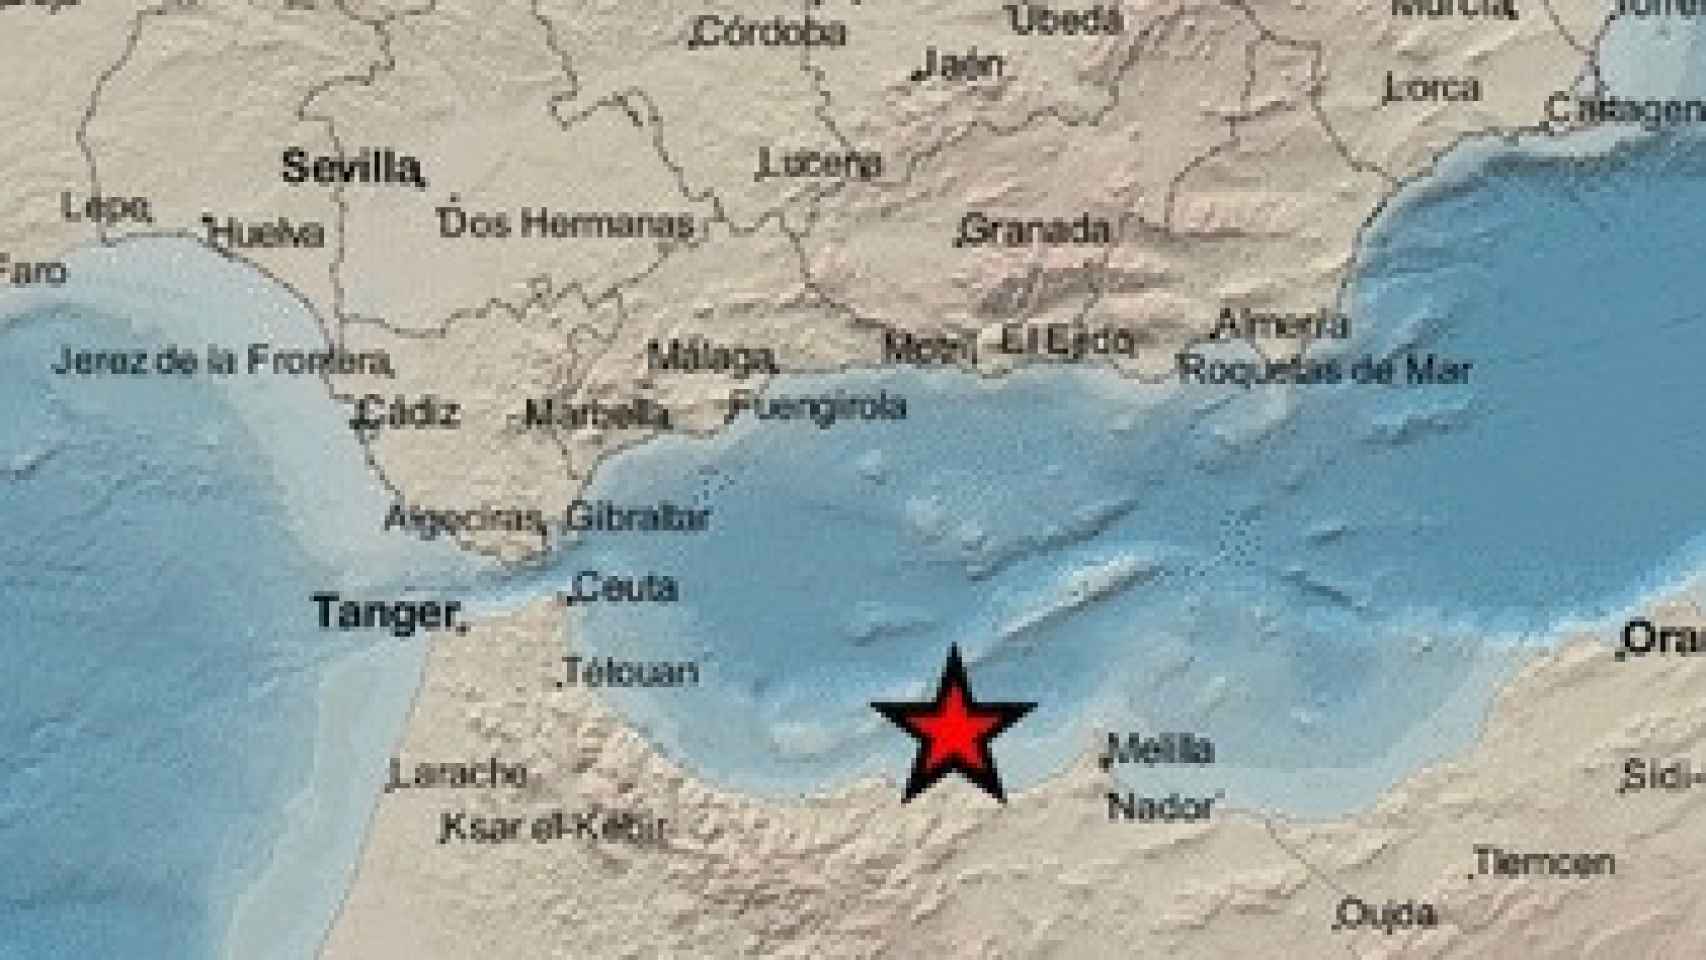 Un terremoto de magnitud  4.1 con epicentro en el Mar de Alborán se siente en la provincia de Málaga